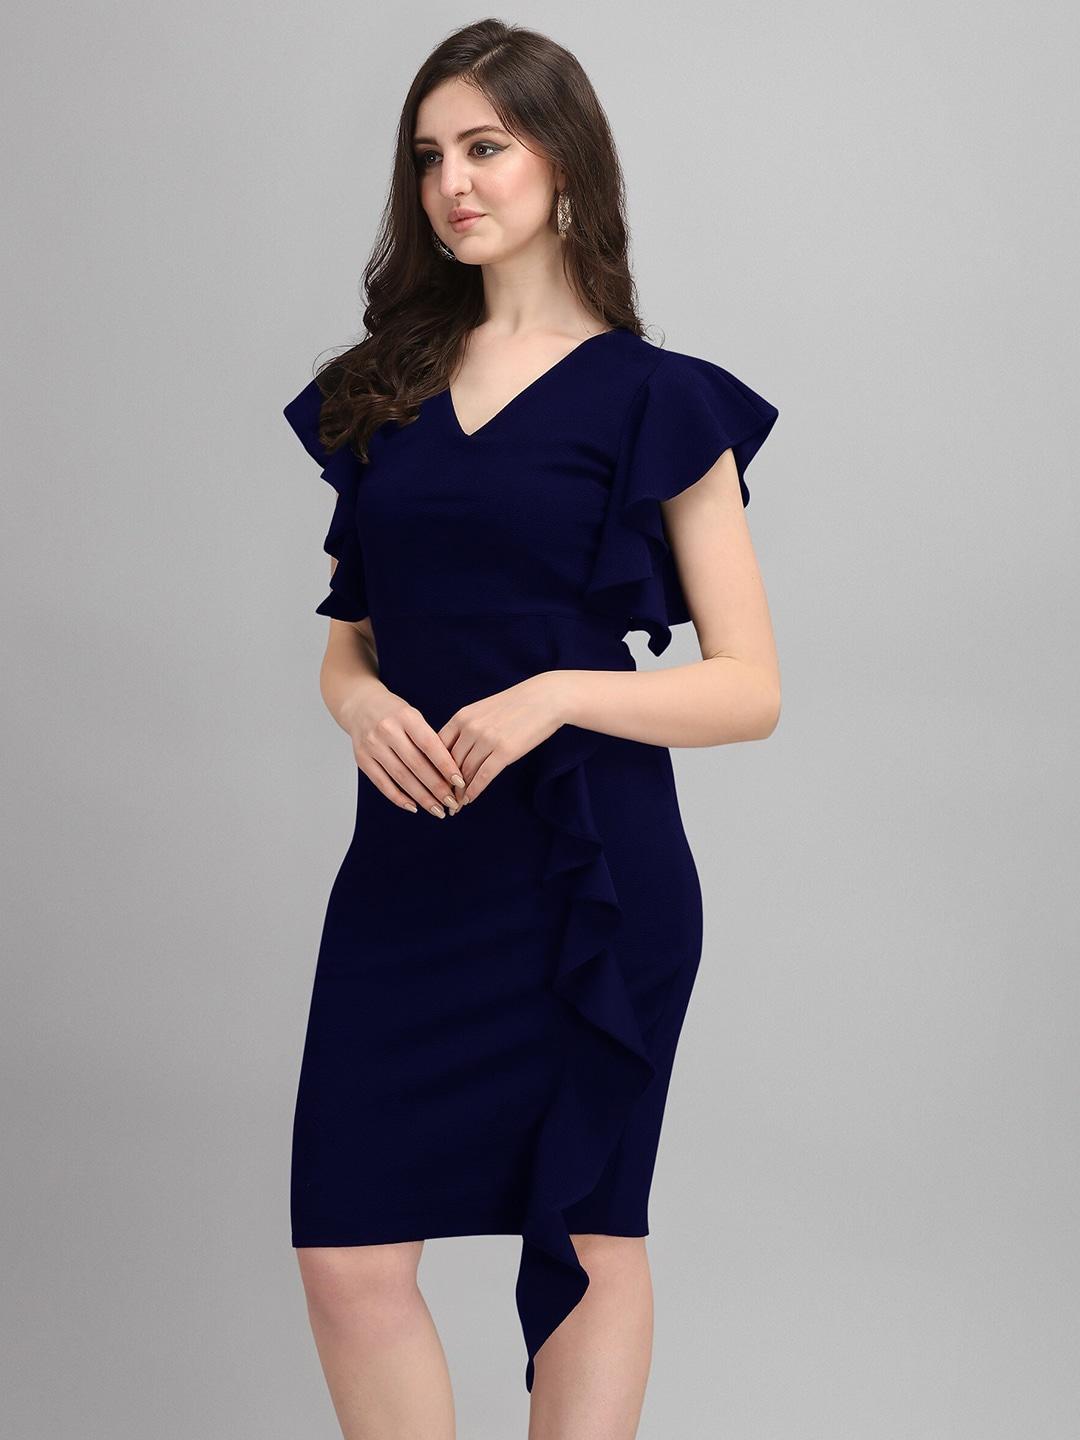 SHEETAL Associates Blue Formal A-Line Dress